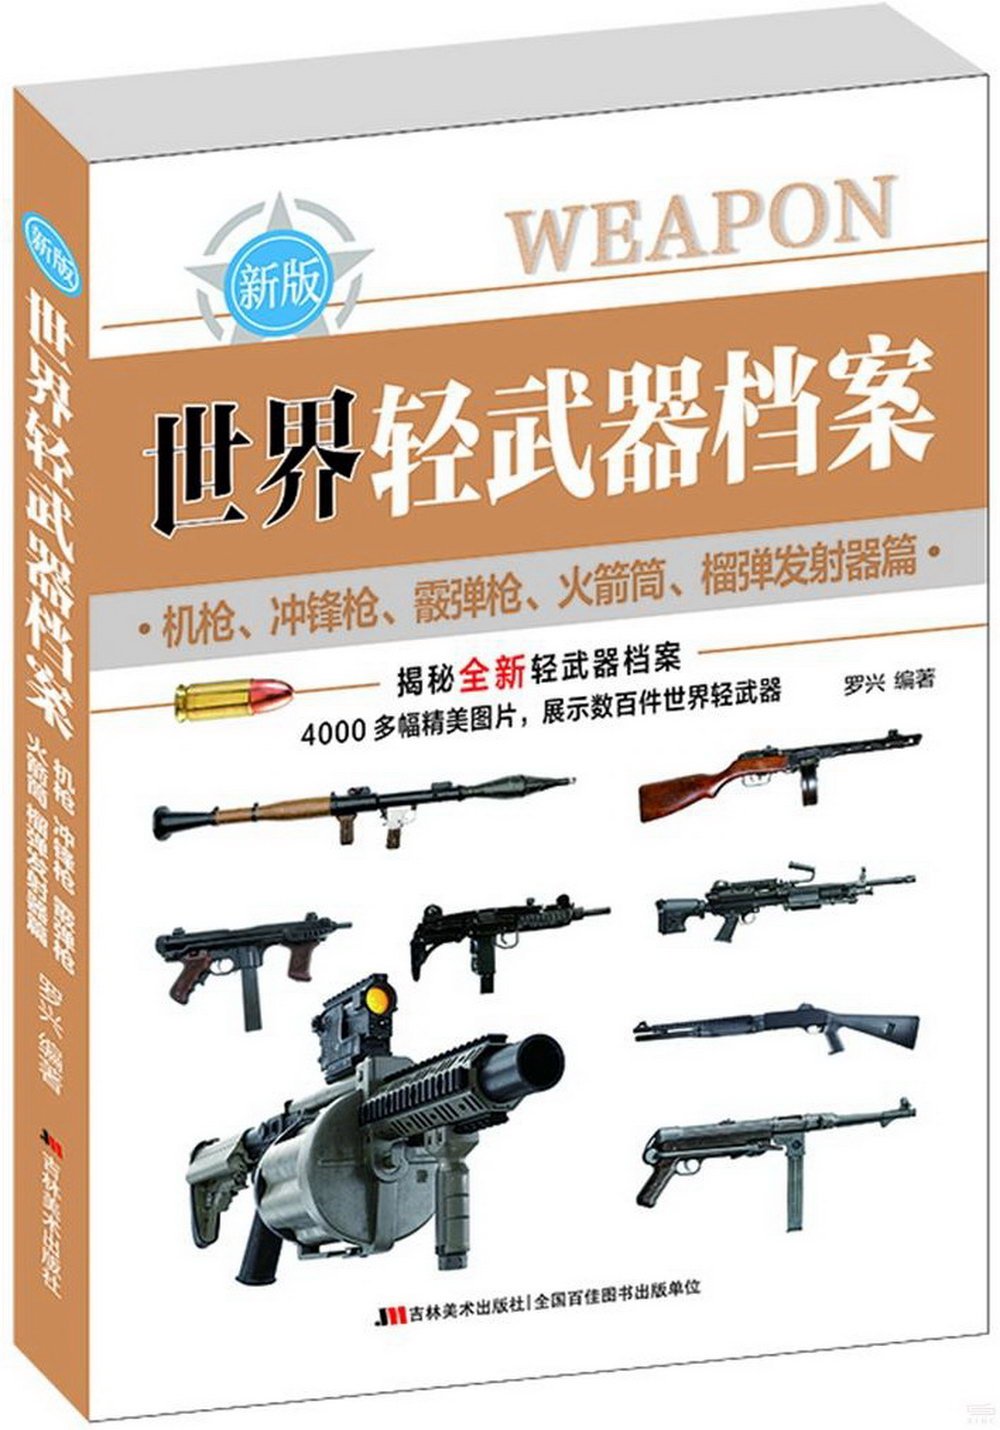 世界輕武器檔案（機槍、衝鋒槍、霰彈槍、火箭筒、榴彈發射器篇）